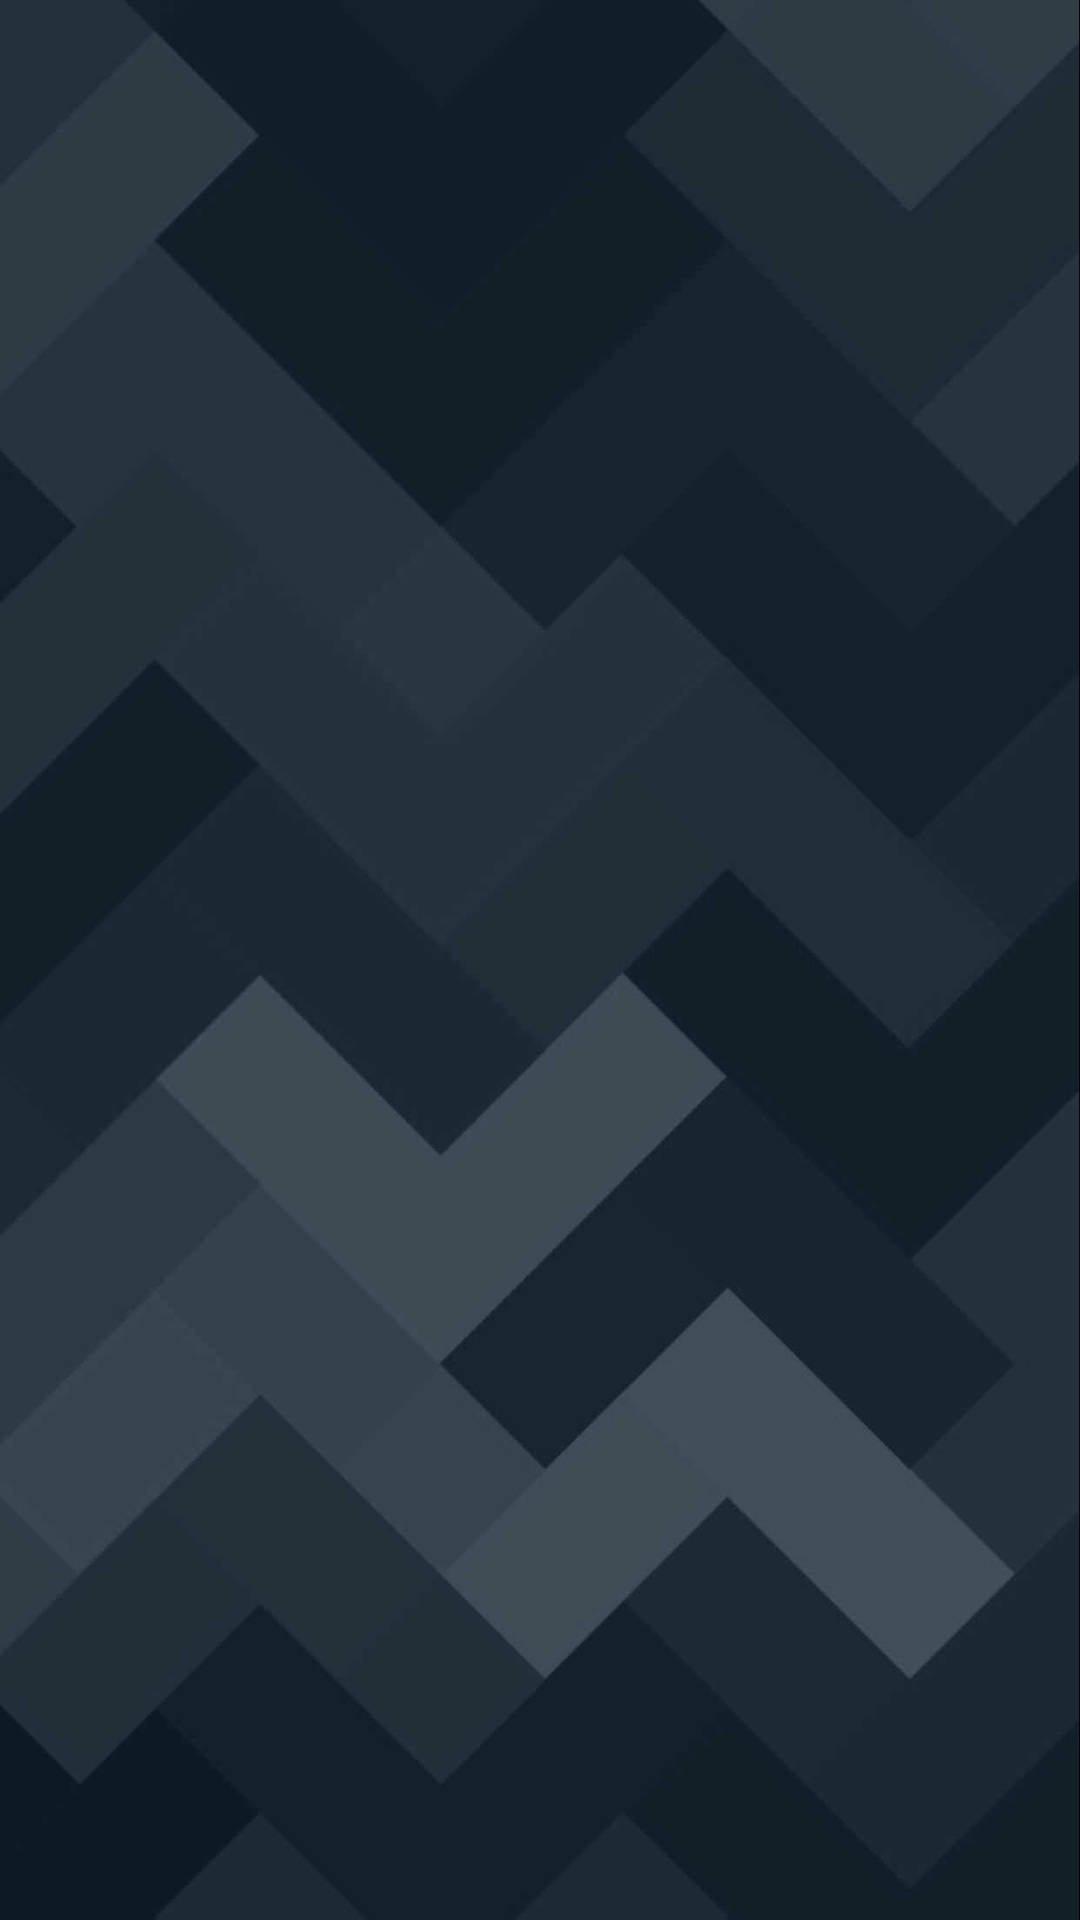 Dark Chevron Patterns Minimalist Android Background